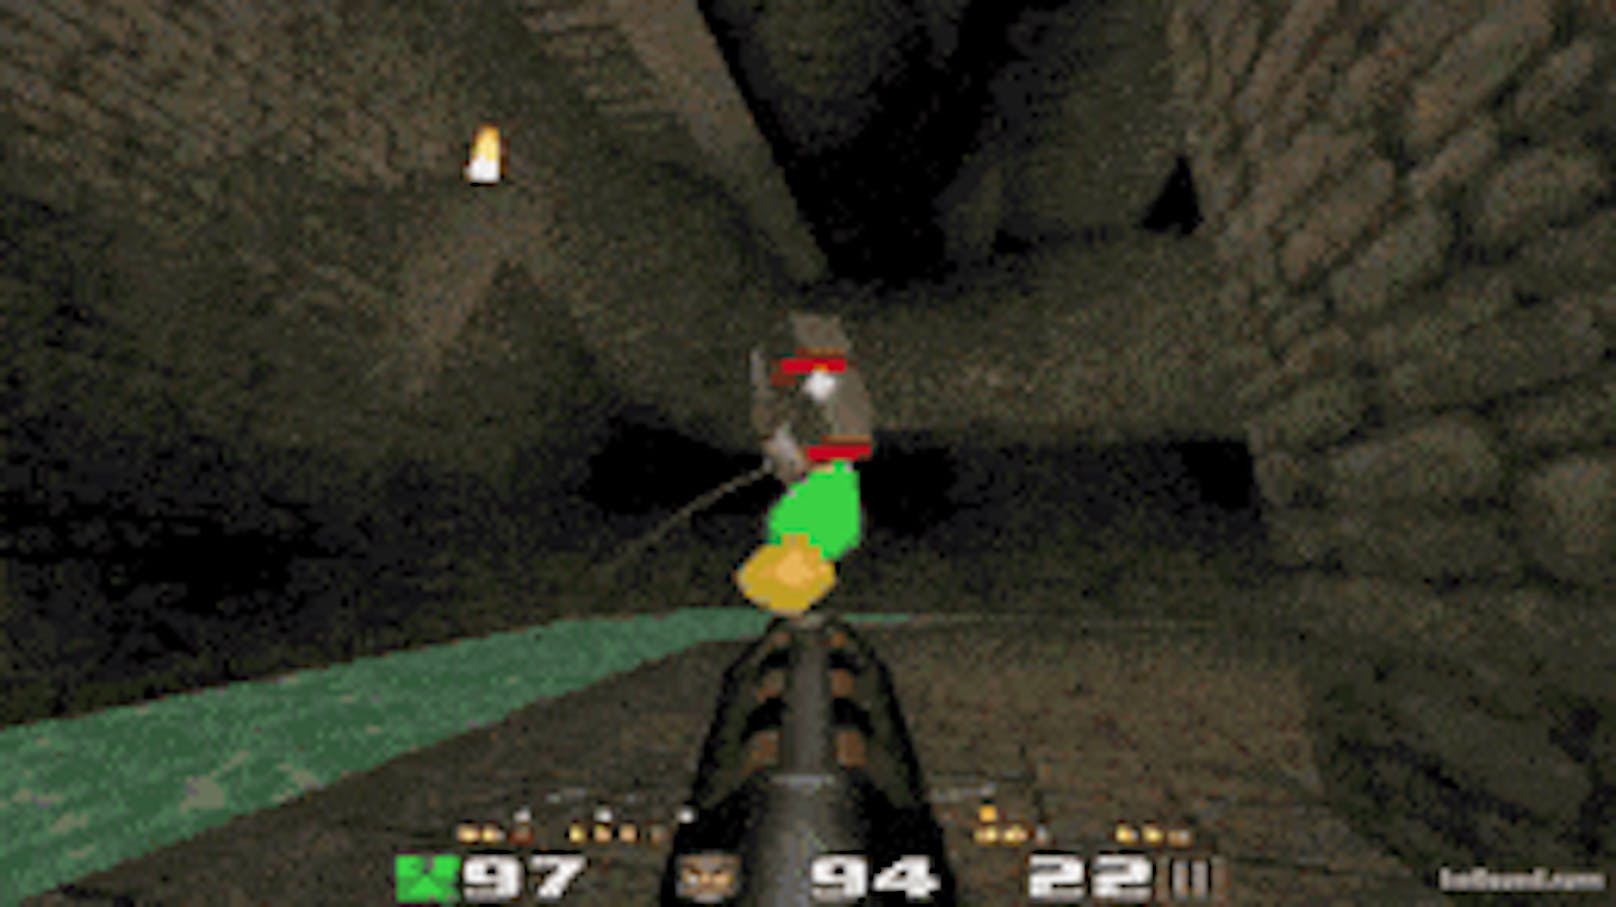 Die erste Version von "Quake" wurde 1996 veröffentlicht und war ein Hit. Die Spielreihe war maßgeblich am Erfolg des E-Sports beteiligt. Gerade um das Millennium war "Quake 3 Arena" der beliebteste Shooter.